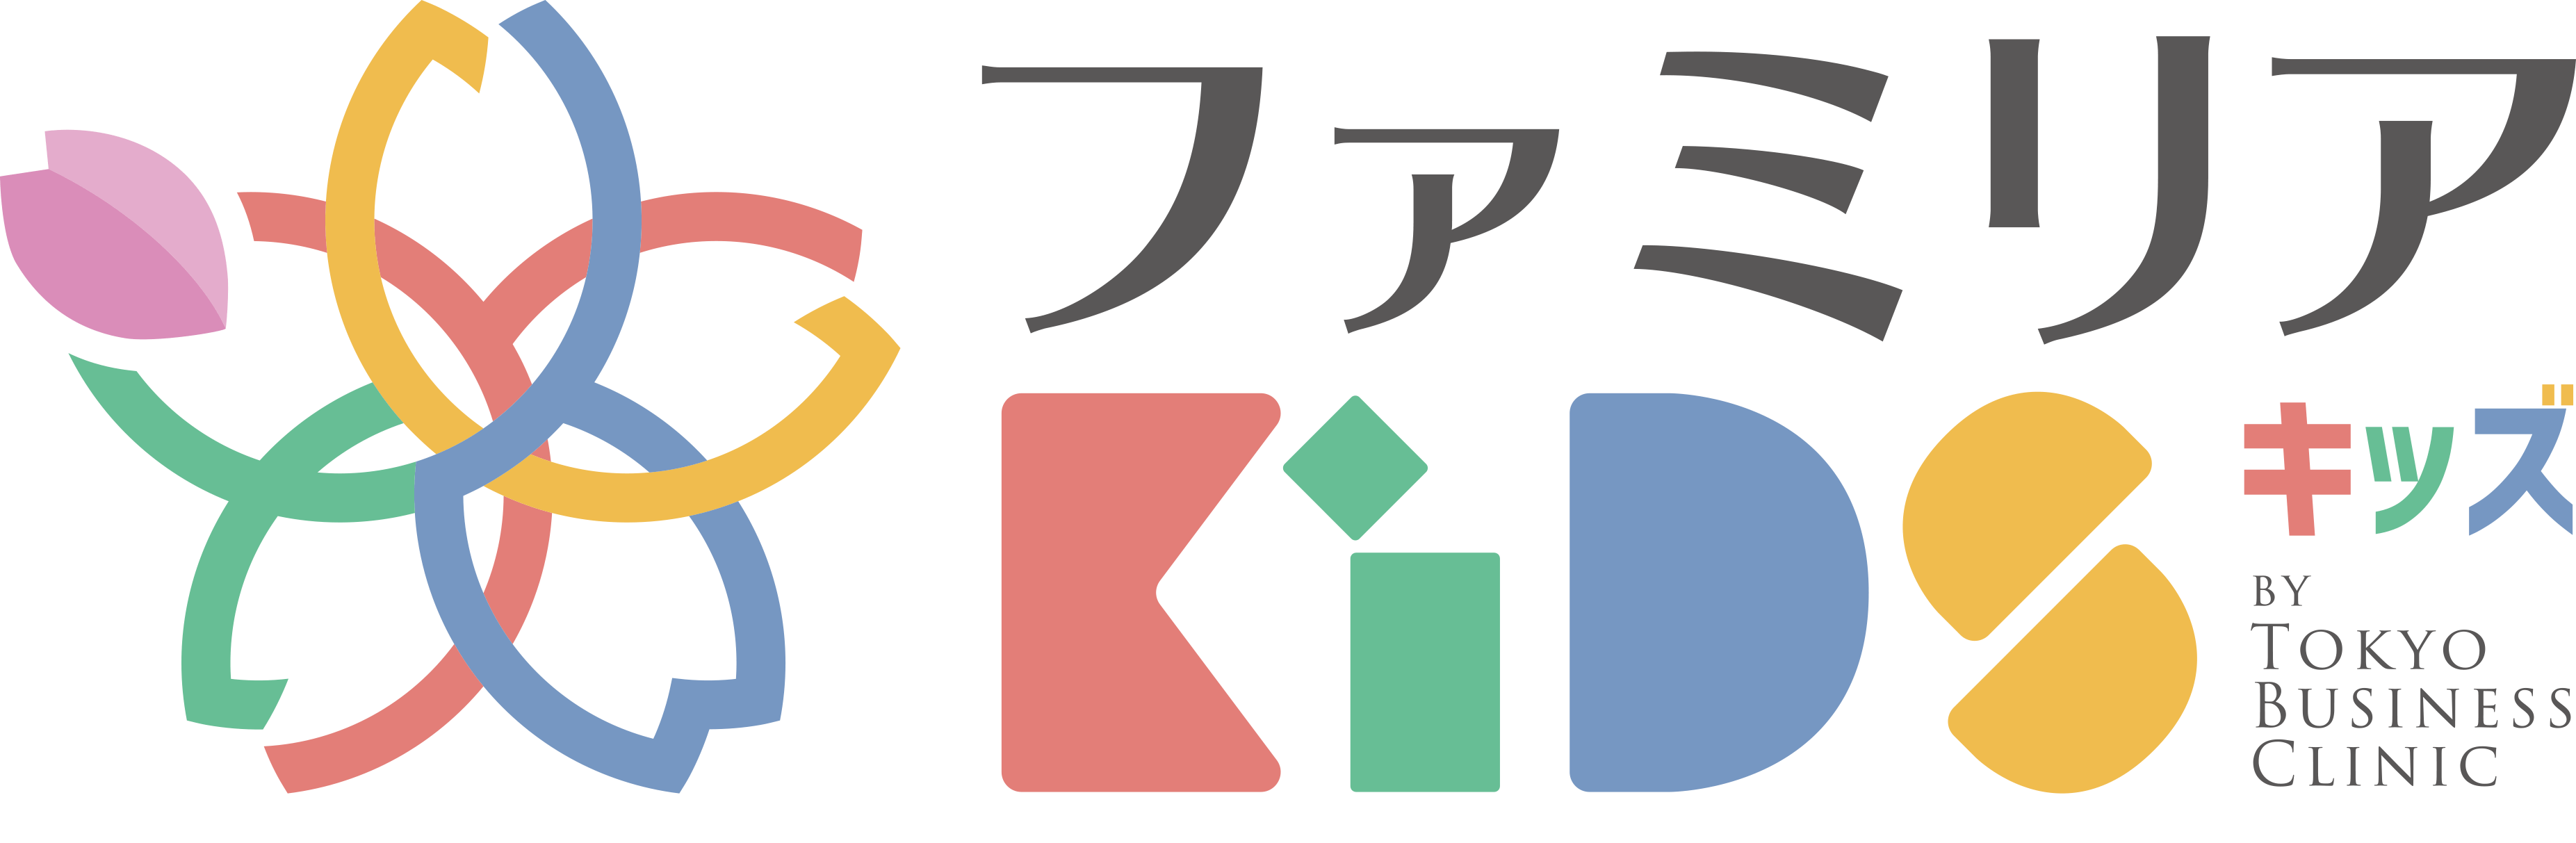 東京ビジネスクリニックロゴ